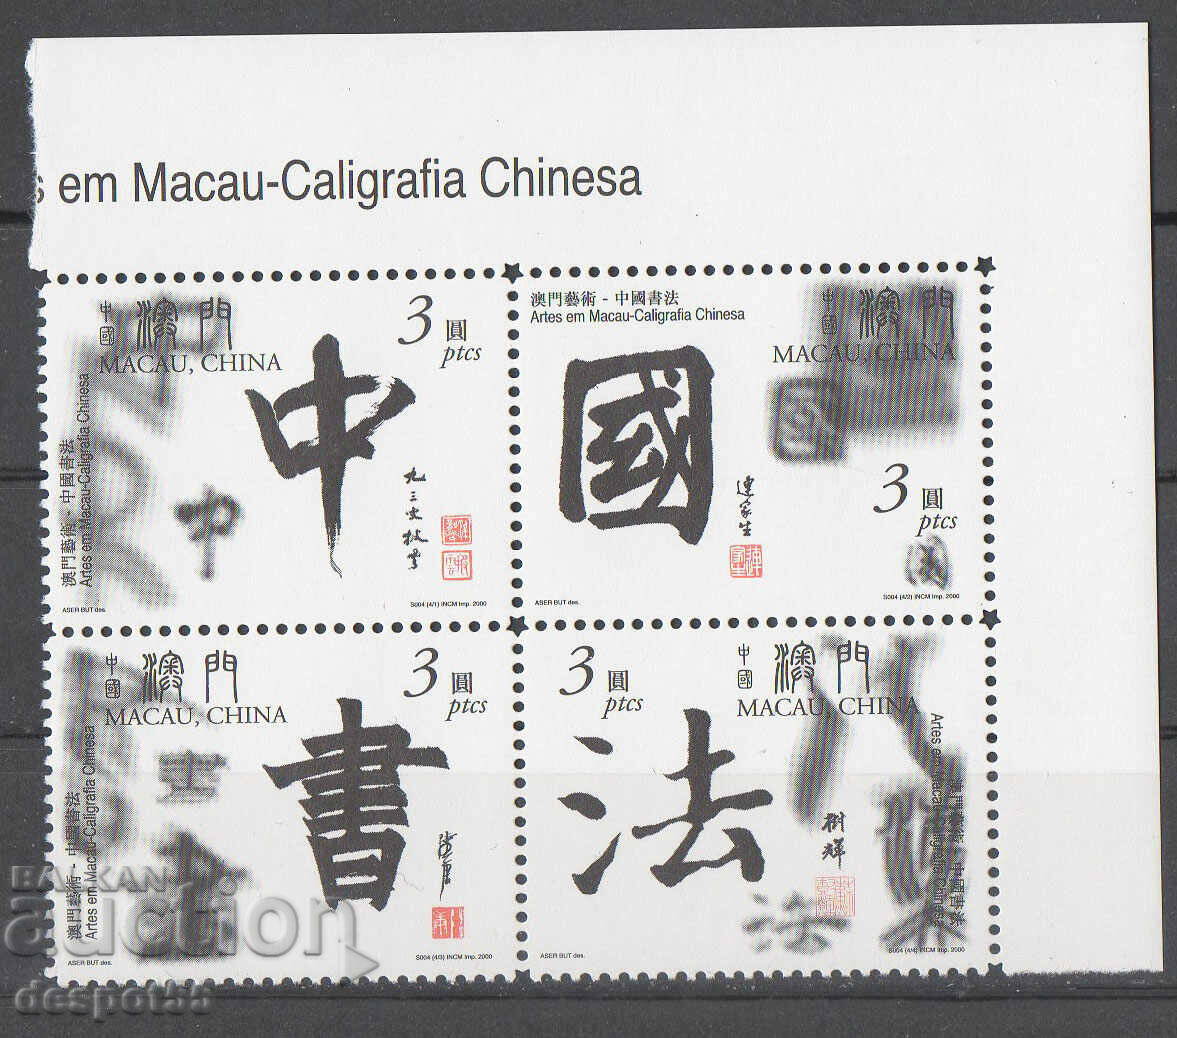 2000. Macau. Arts in Macau - Chinese calligraphy.